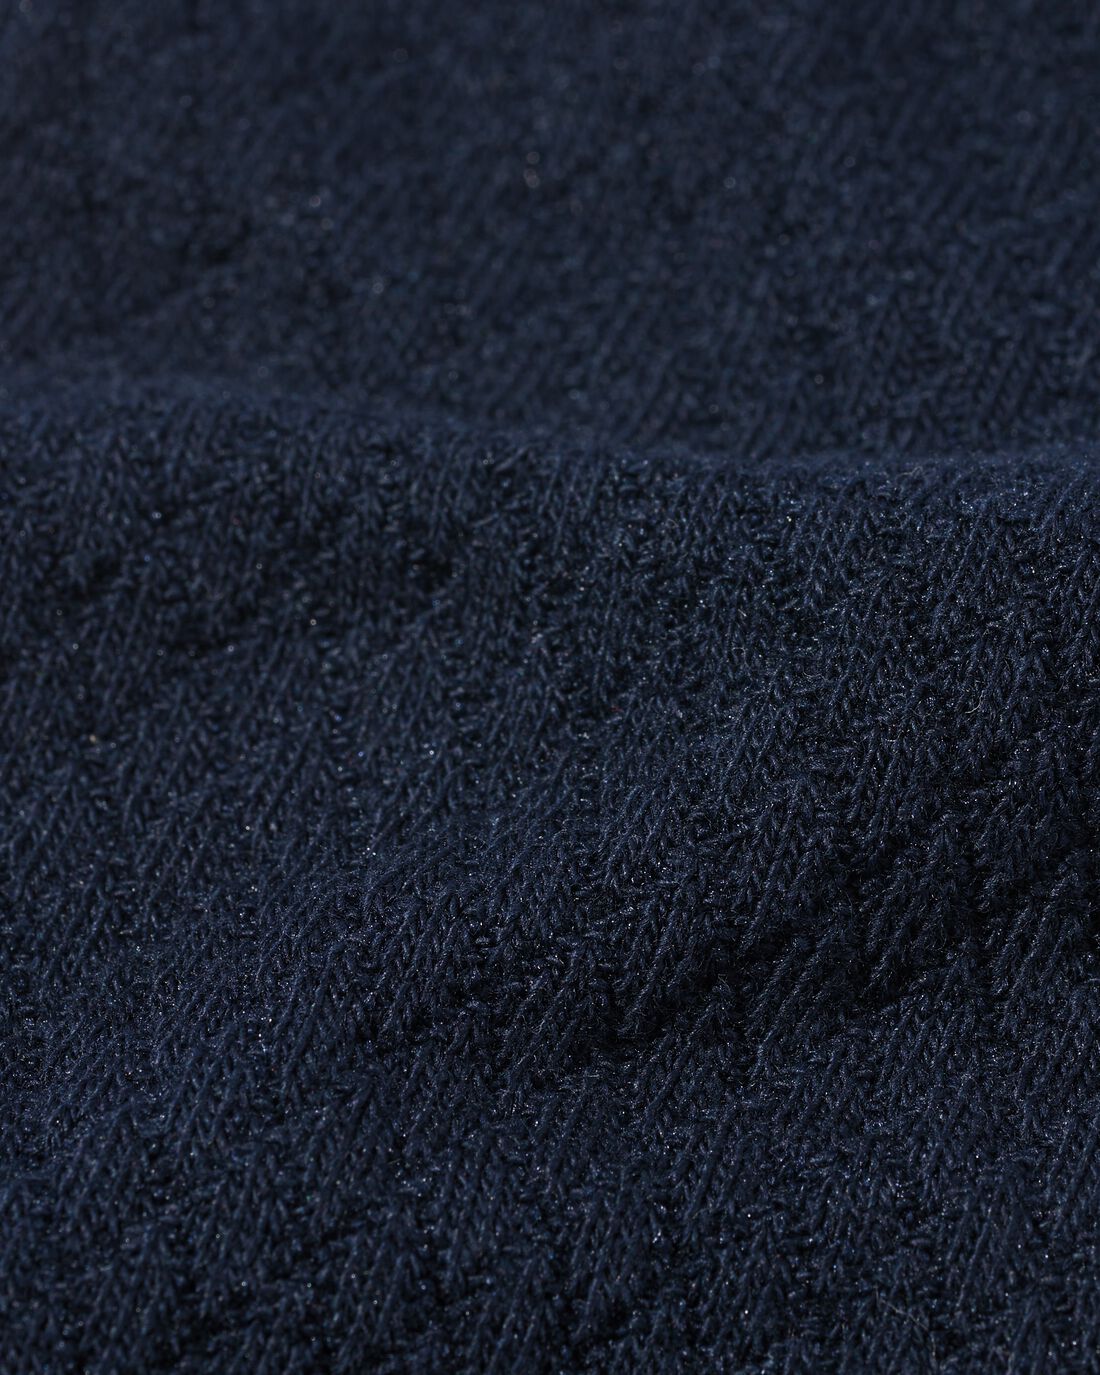 HEMA Heren Sokken Met Katoen Textuur Donkerblauw (donkerblauw)